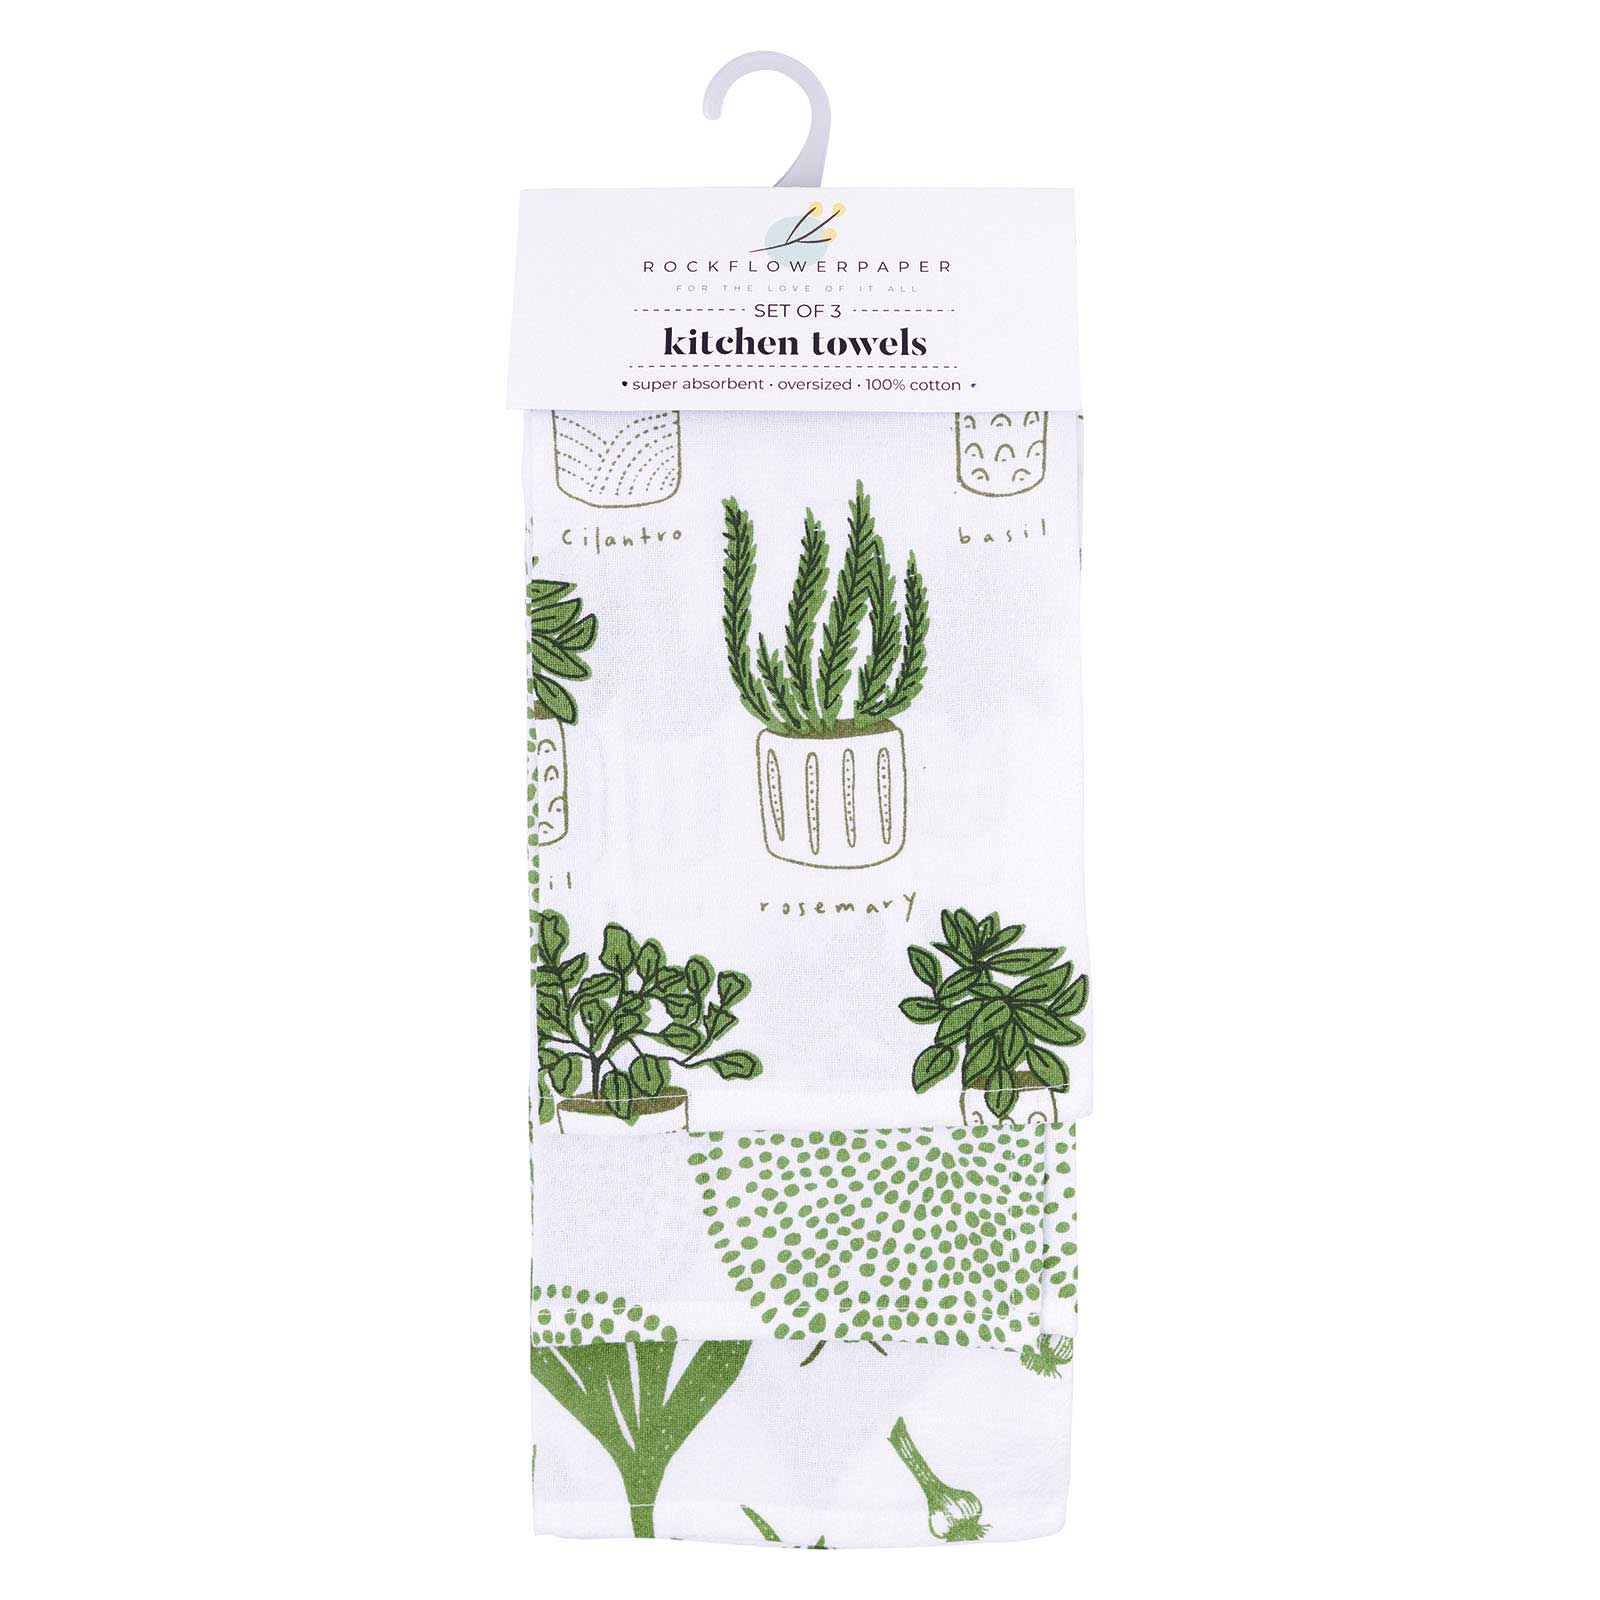 Swedish Dishcloth & Tea Towel Bundle - Herbs - Green